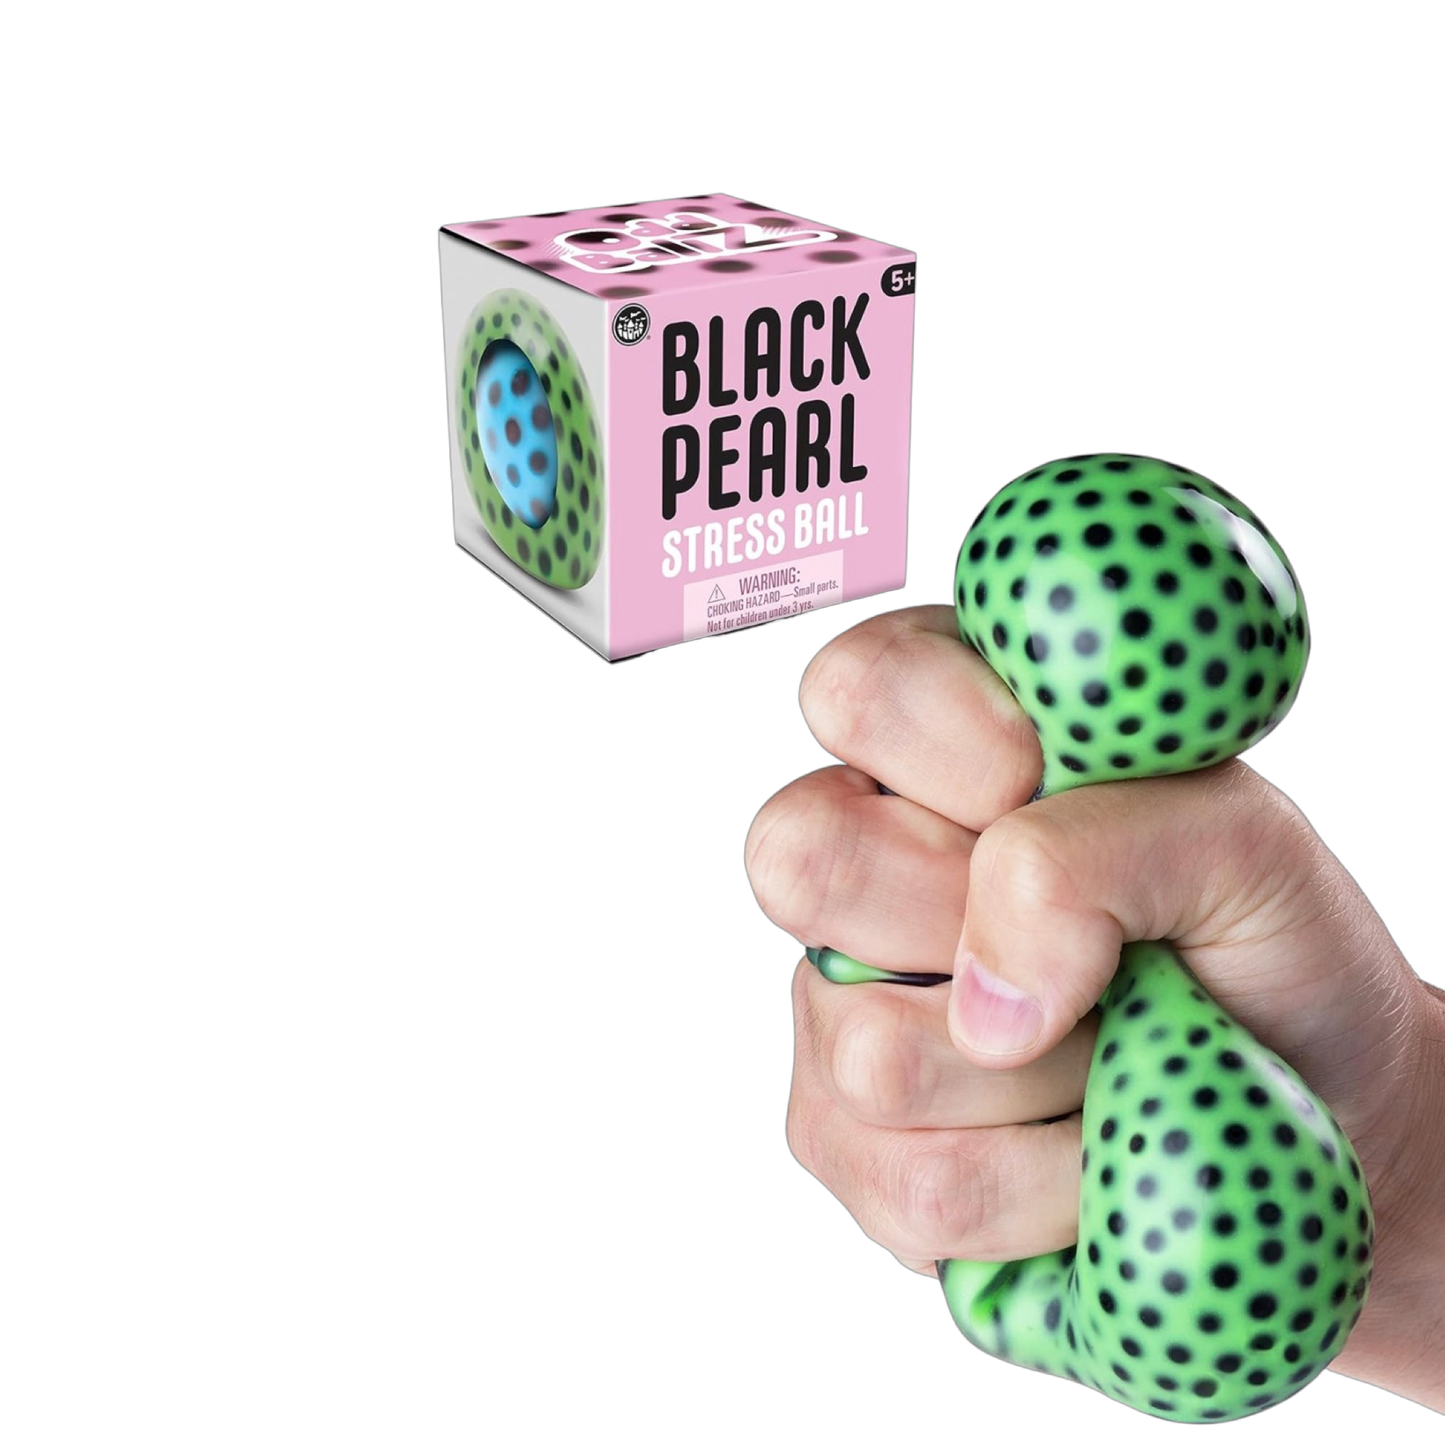 Black Pearl Stress Ball